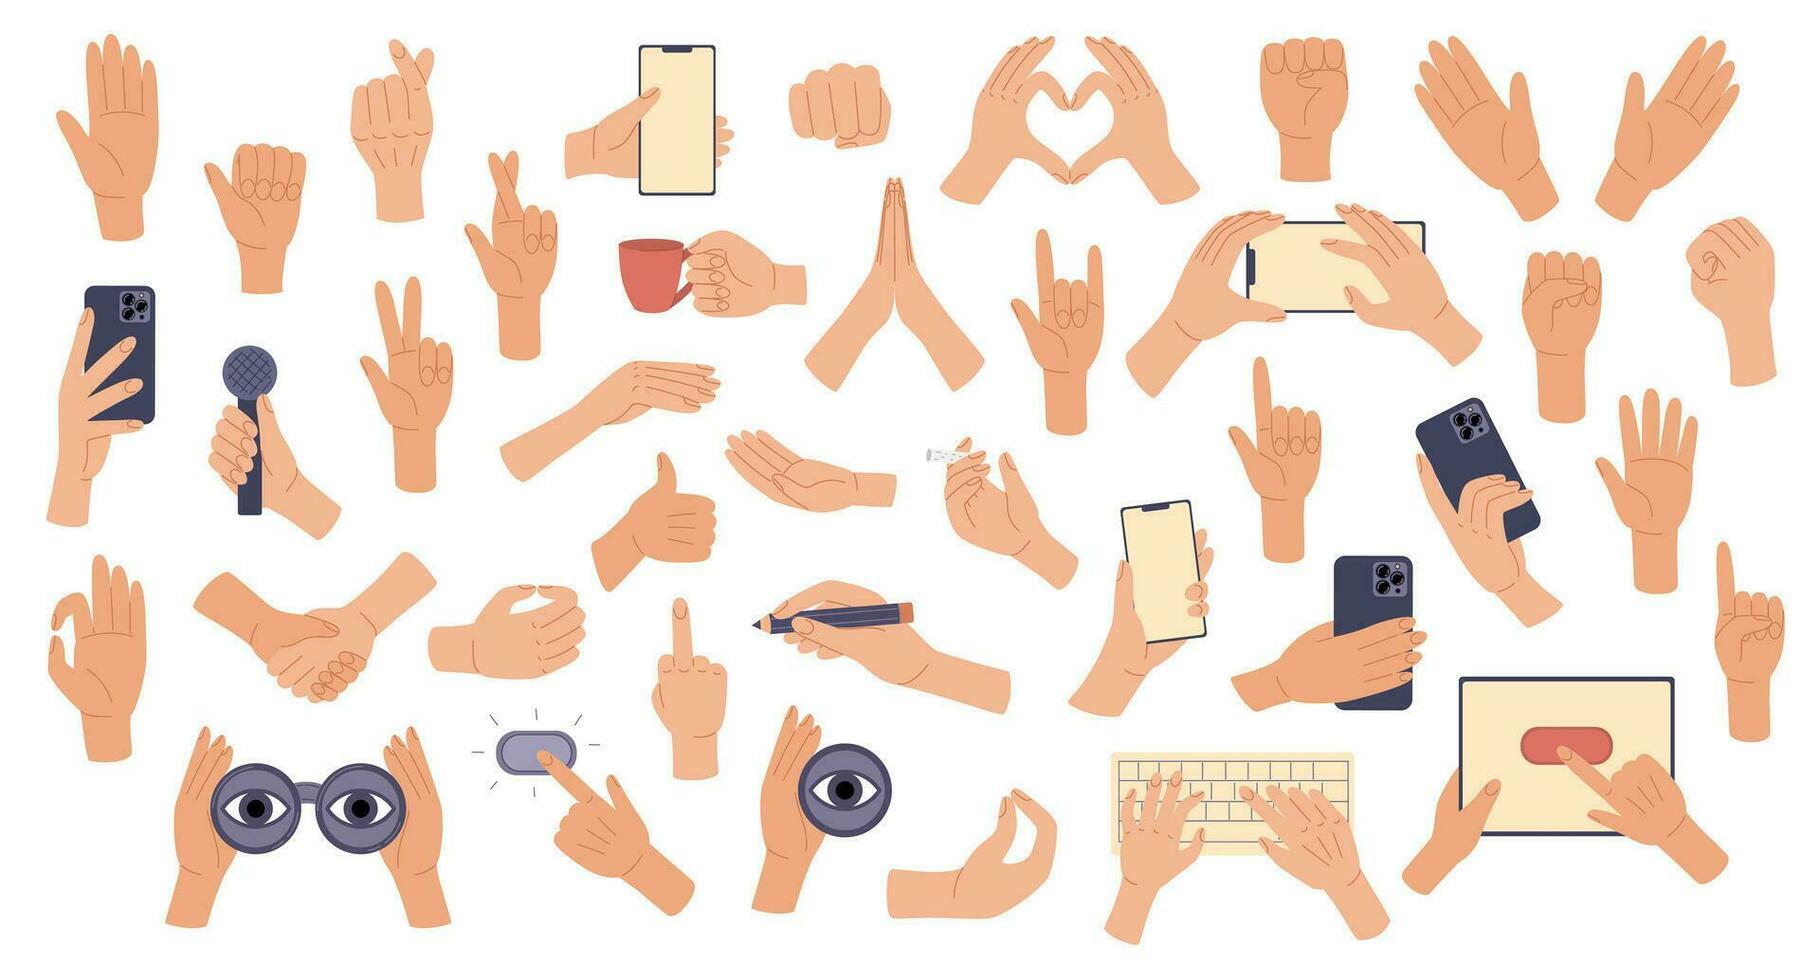 groot reeks hand- gebaren. handen Holding spullen. tekens, uitdrukkingen met richten vingers, gebalde vuisten, Open en groet handpalmen, tonen vrede teken, hart. vector illustratie in tekening stijl